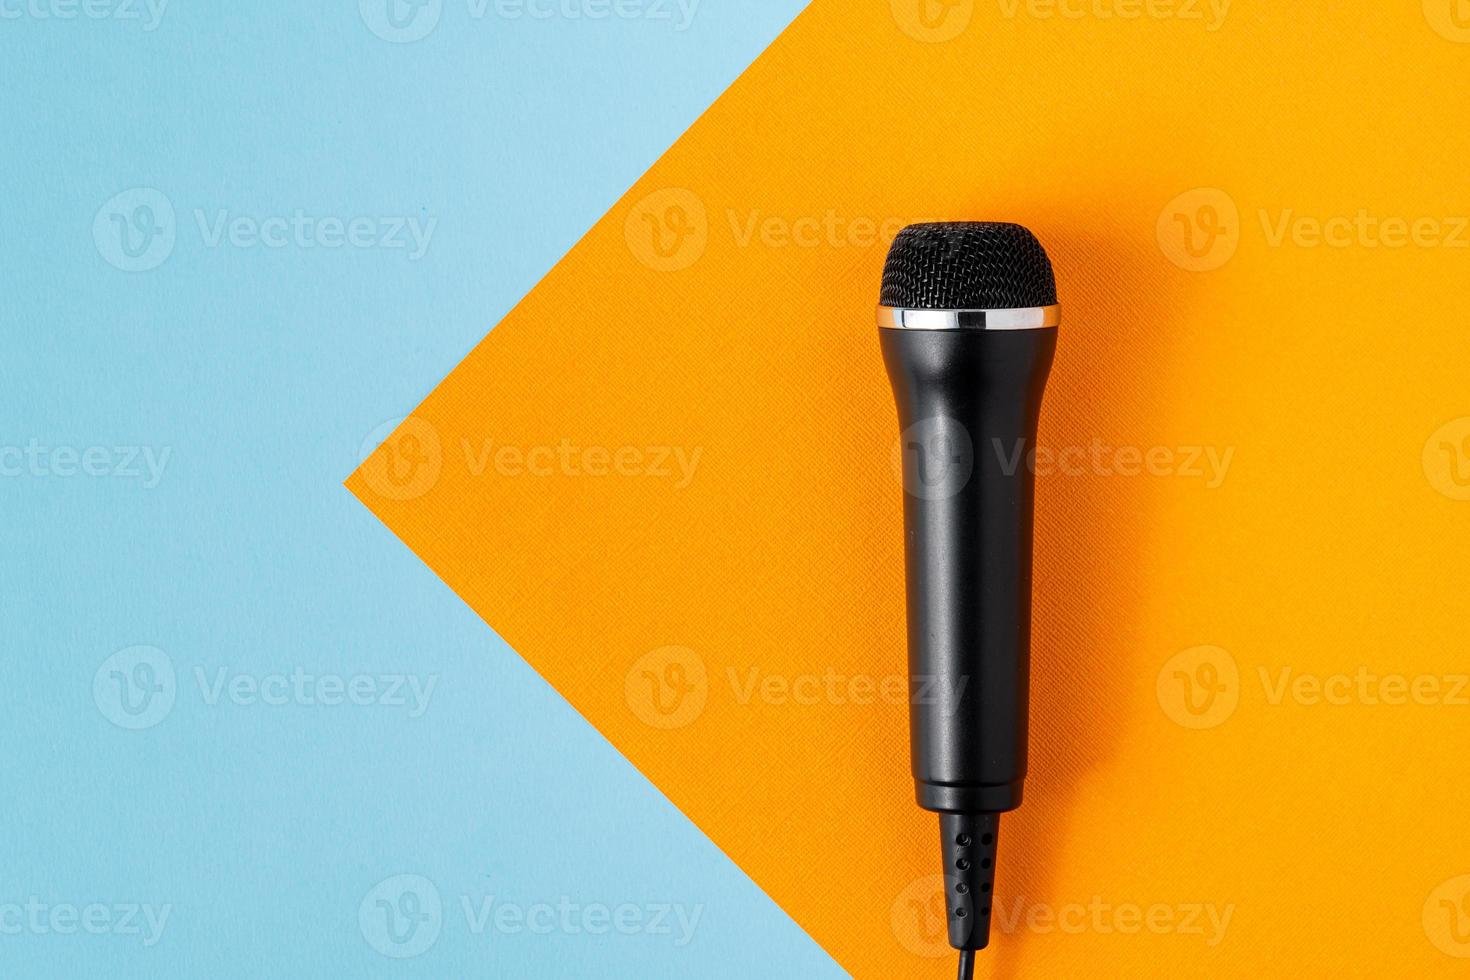 micrófono de cable en diseño de fondo naranja y turquesa colorido, sobrecarga, espacio de copia foto